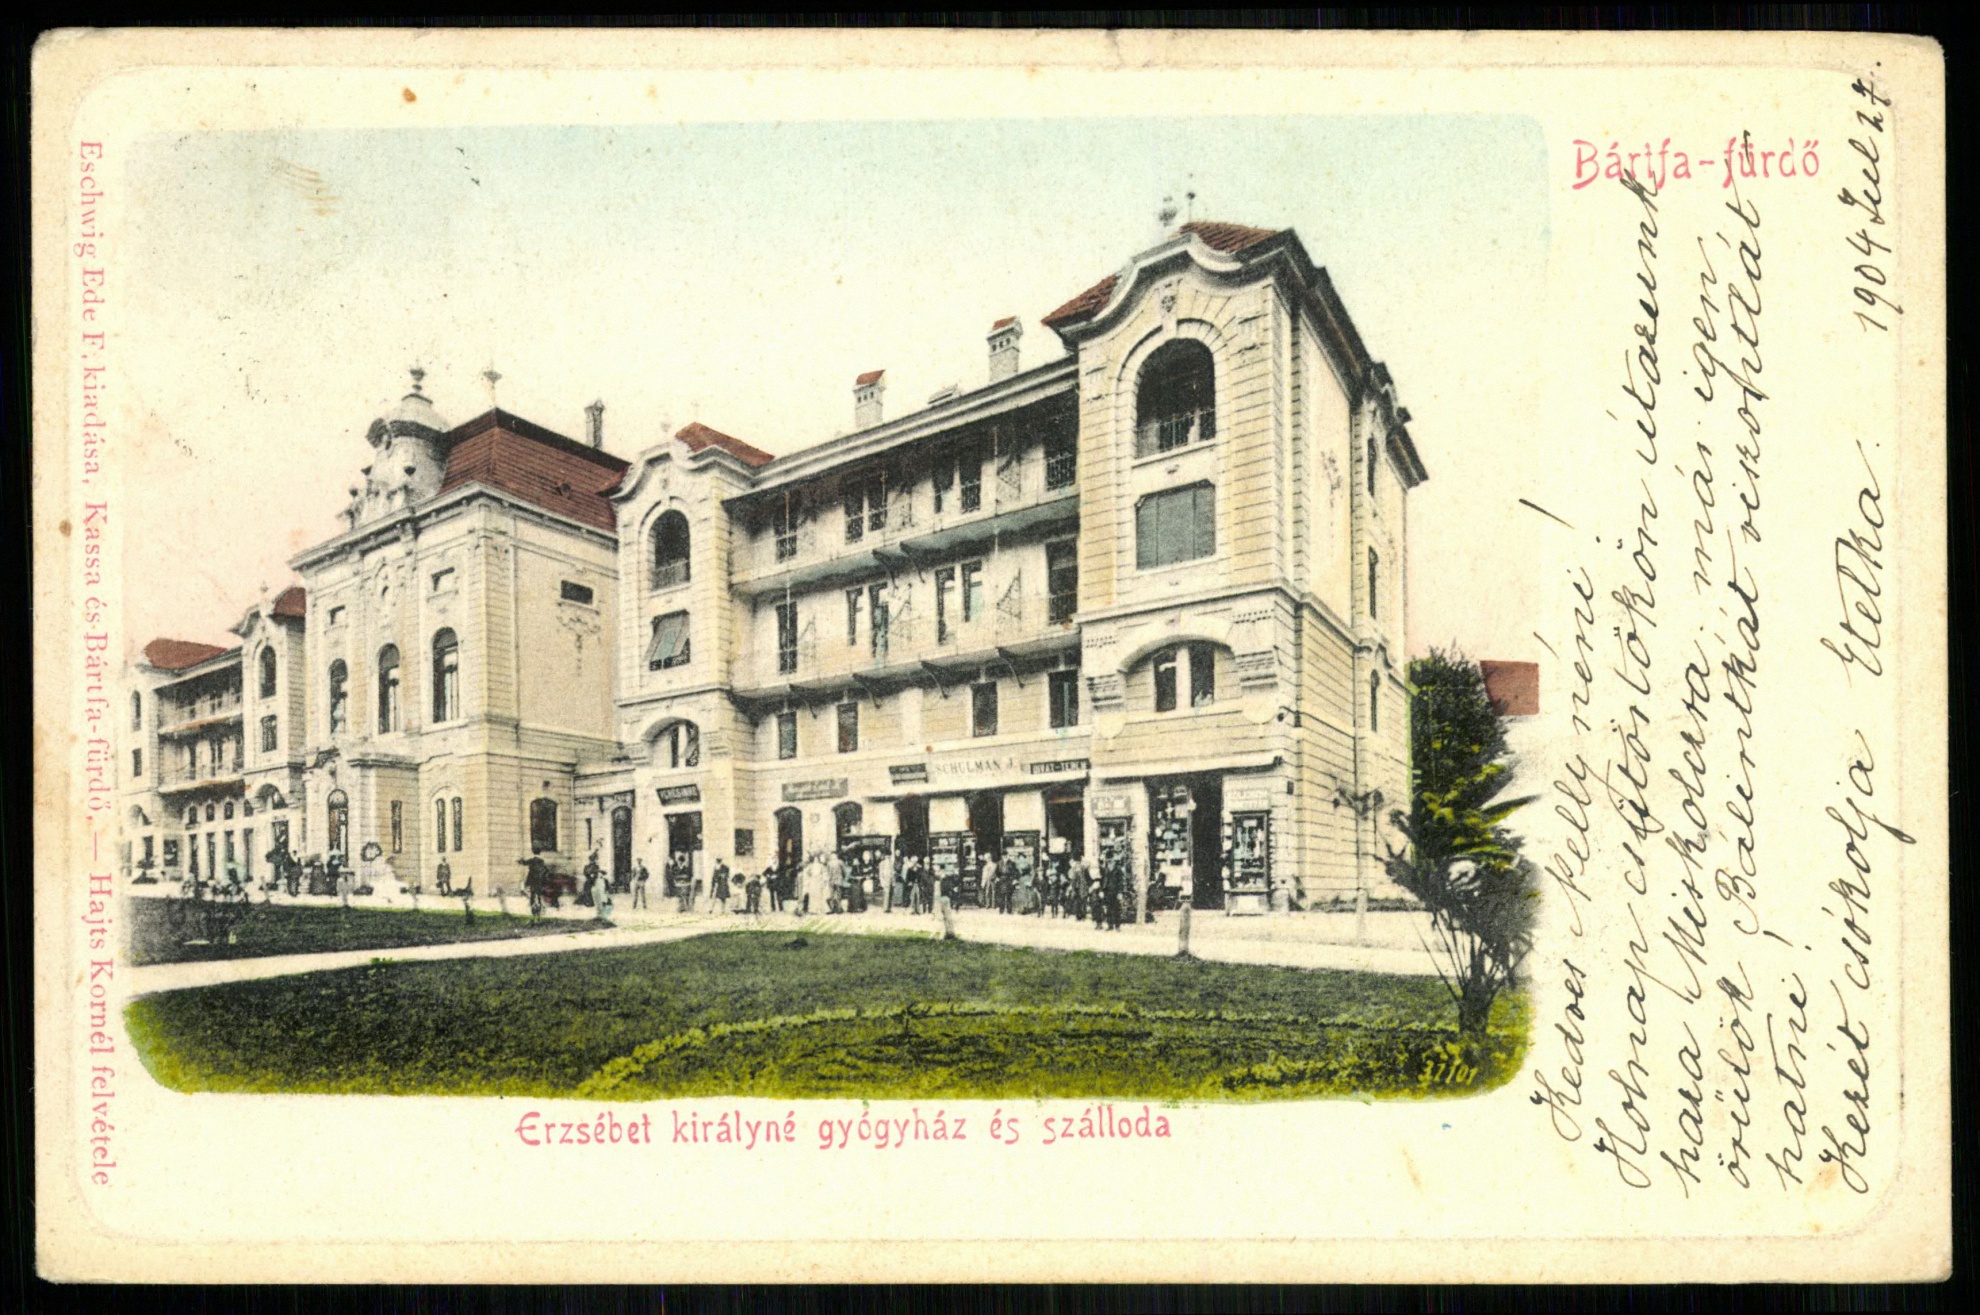 Bártfafürdő Erzsébet királyné gyógyház és szálloda (Magyar Kereskedelmi és Vendéglátóipari Múzeum CC BY-NC-ND)